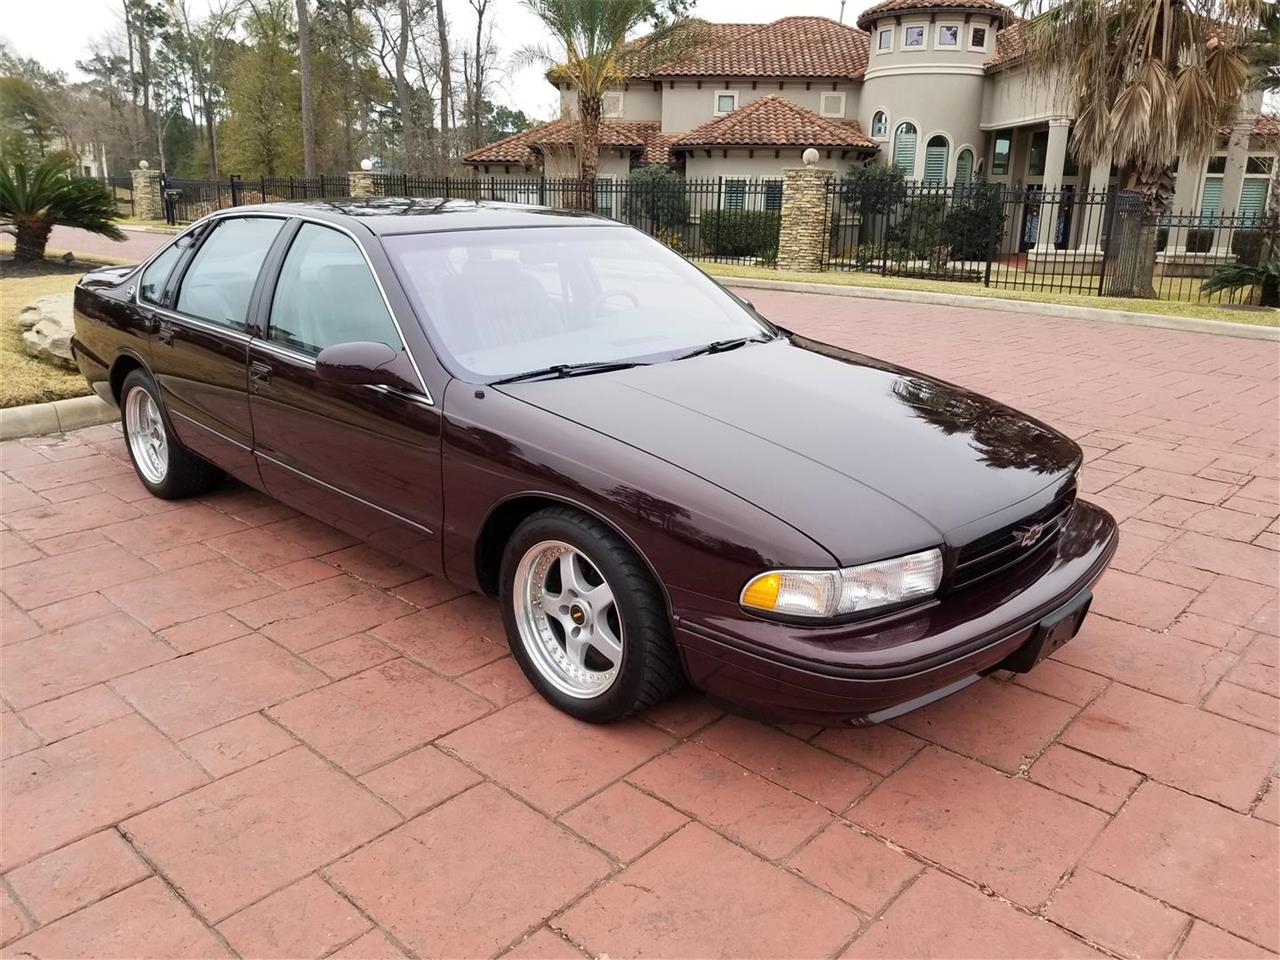 1996 Chevrolet Impala Ss For Sale Classiccars Com Cc 1060835